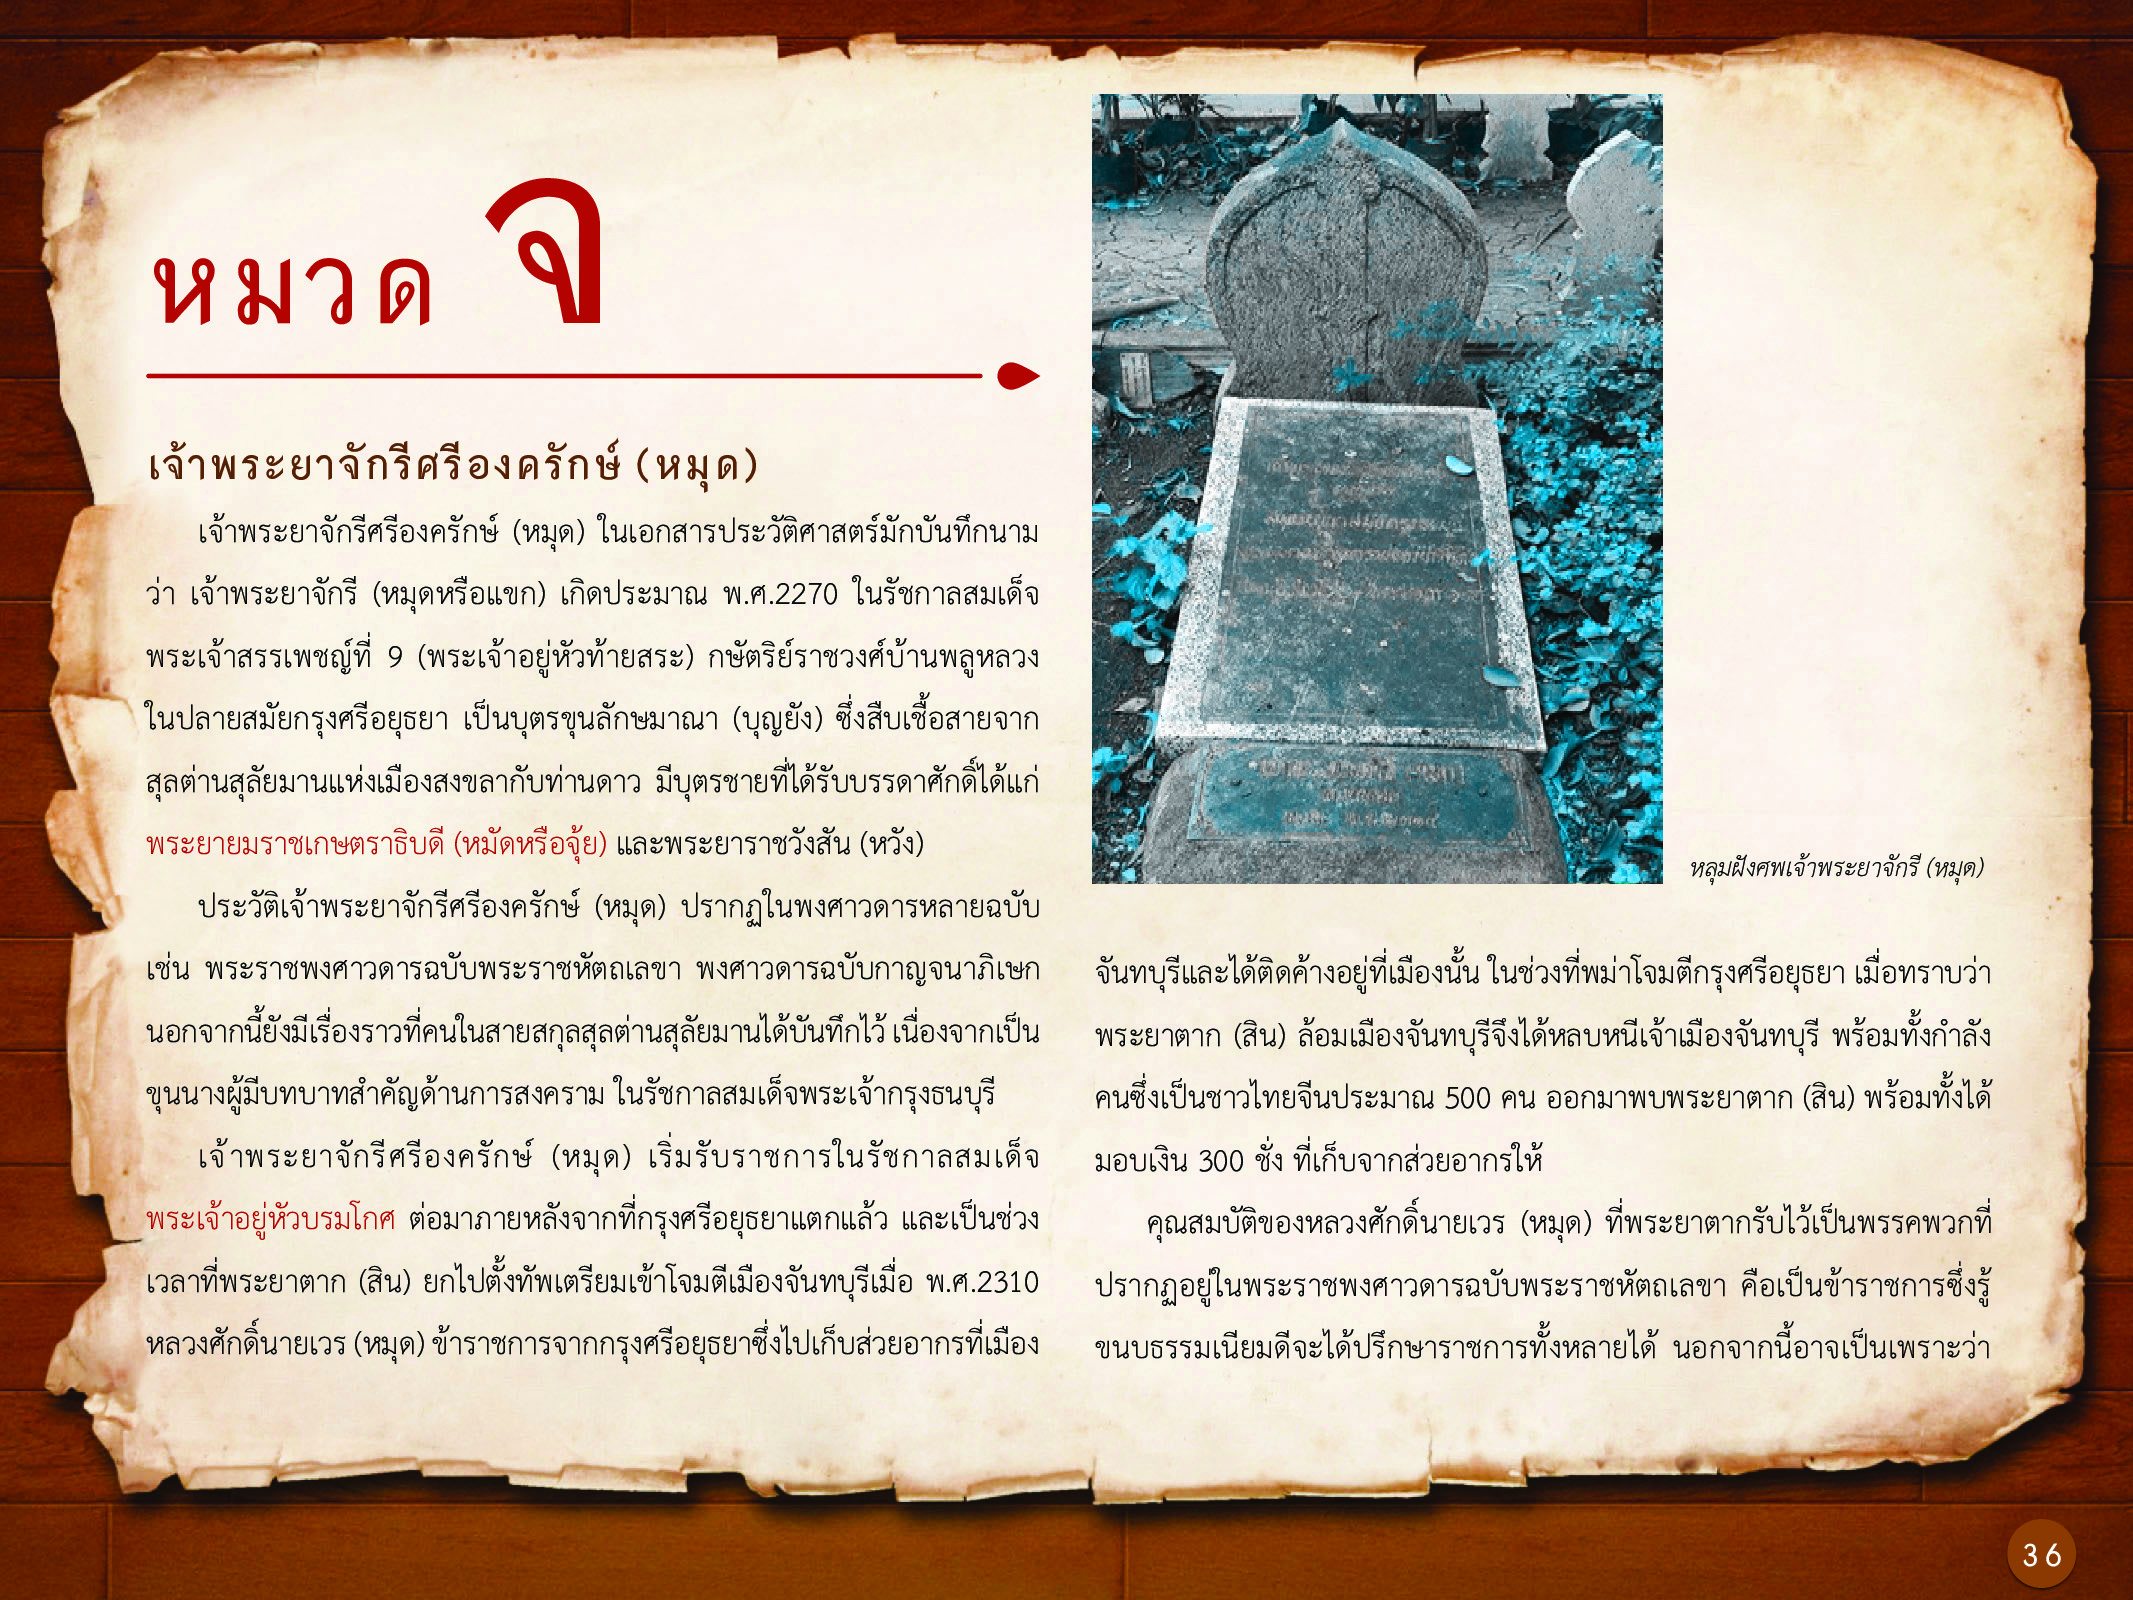 ประวัติศาสตร์กรุงธนบุรี ./images/history_dhonburi/36.jpg